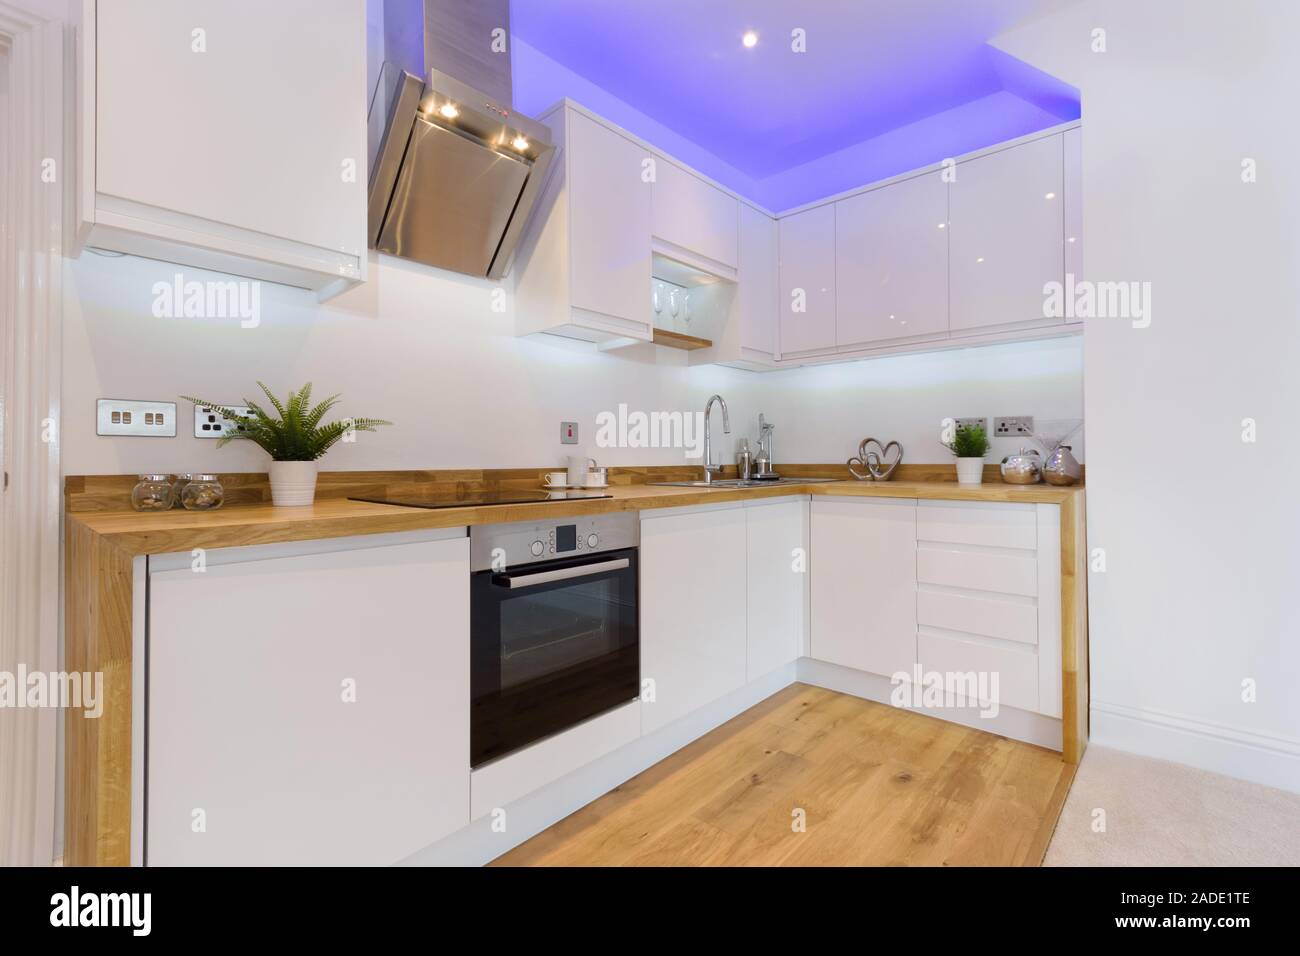 Una cucina moderna ed elegante con ripiani in legno e armadietti elettrodomestici da cucina e illuminazione d'atmosfera Foto Stock